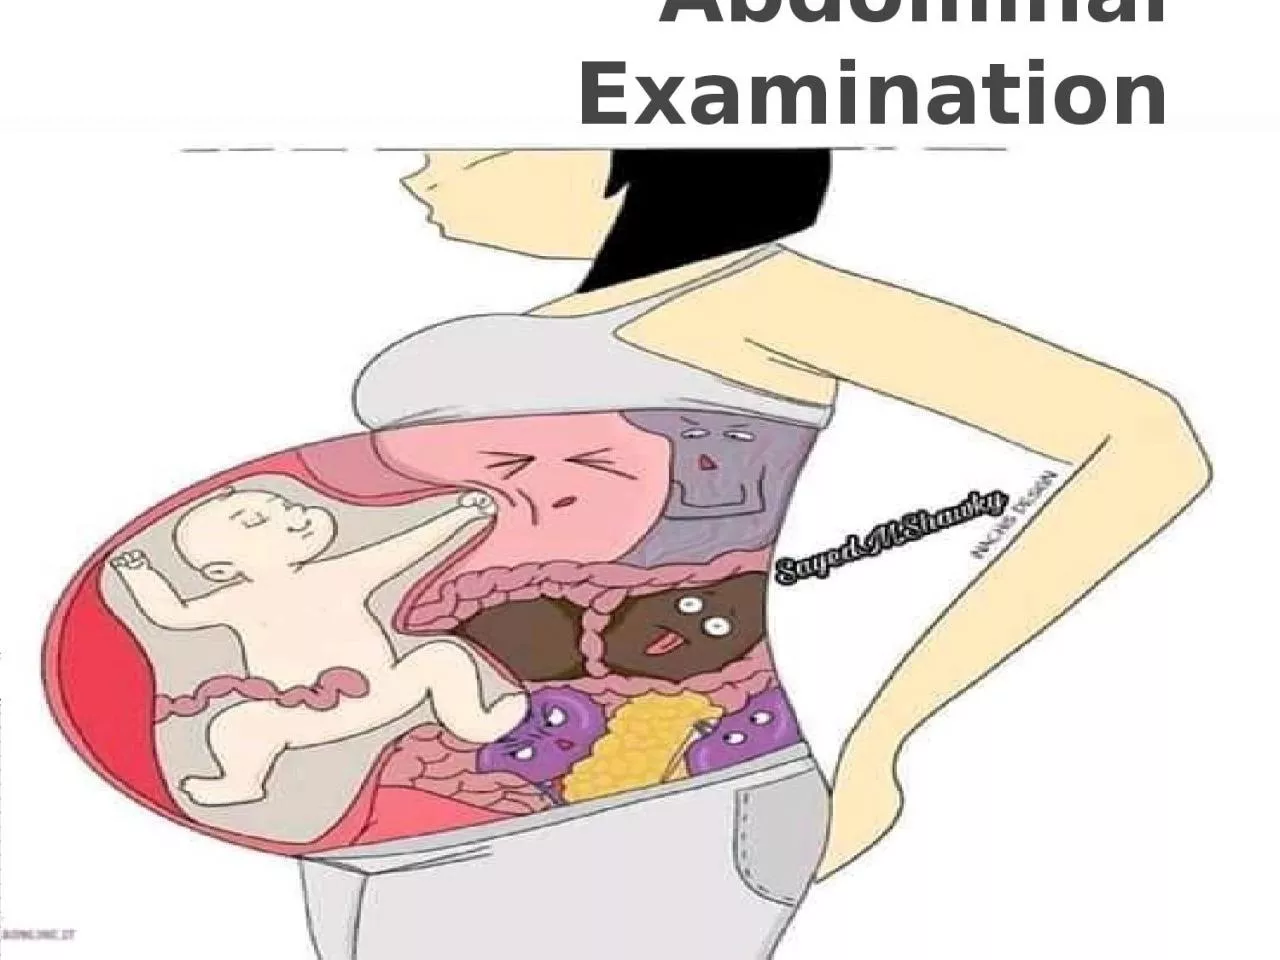 Abdominal Examination Abdominal Examination